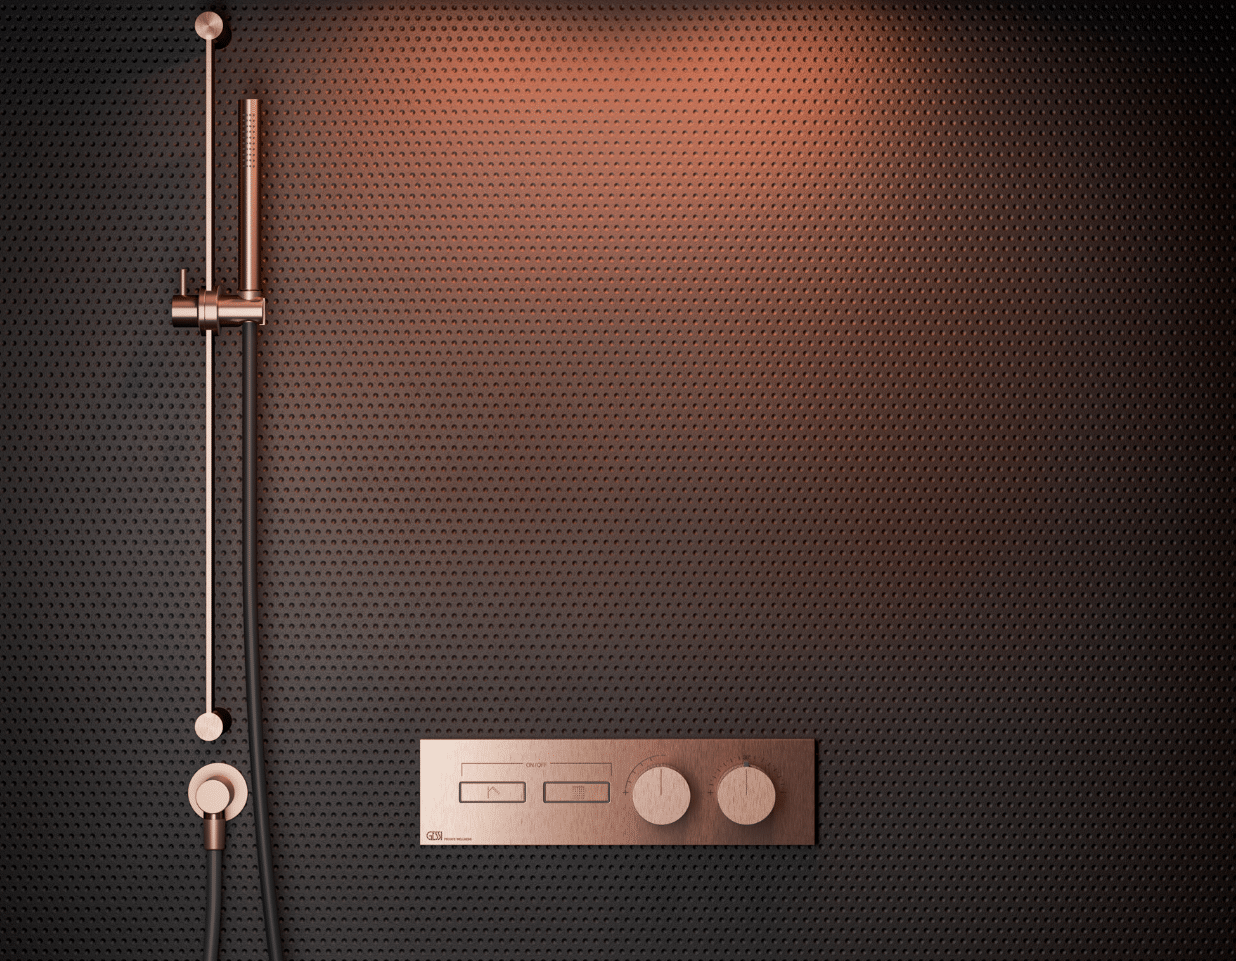 GESSI zeigt die bronze farbige Armatur einer Dusche an einer schwarzen Wand mit rotem Licht.